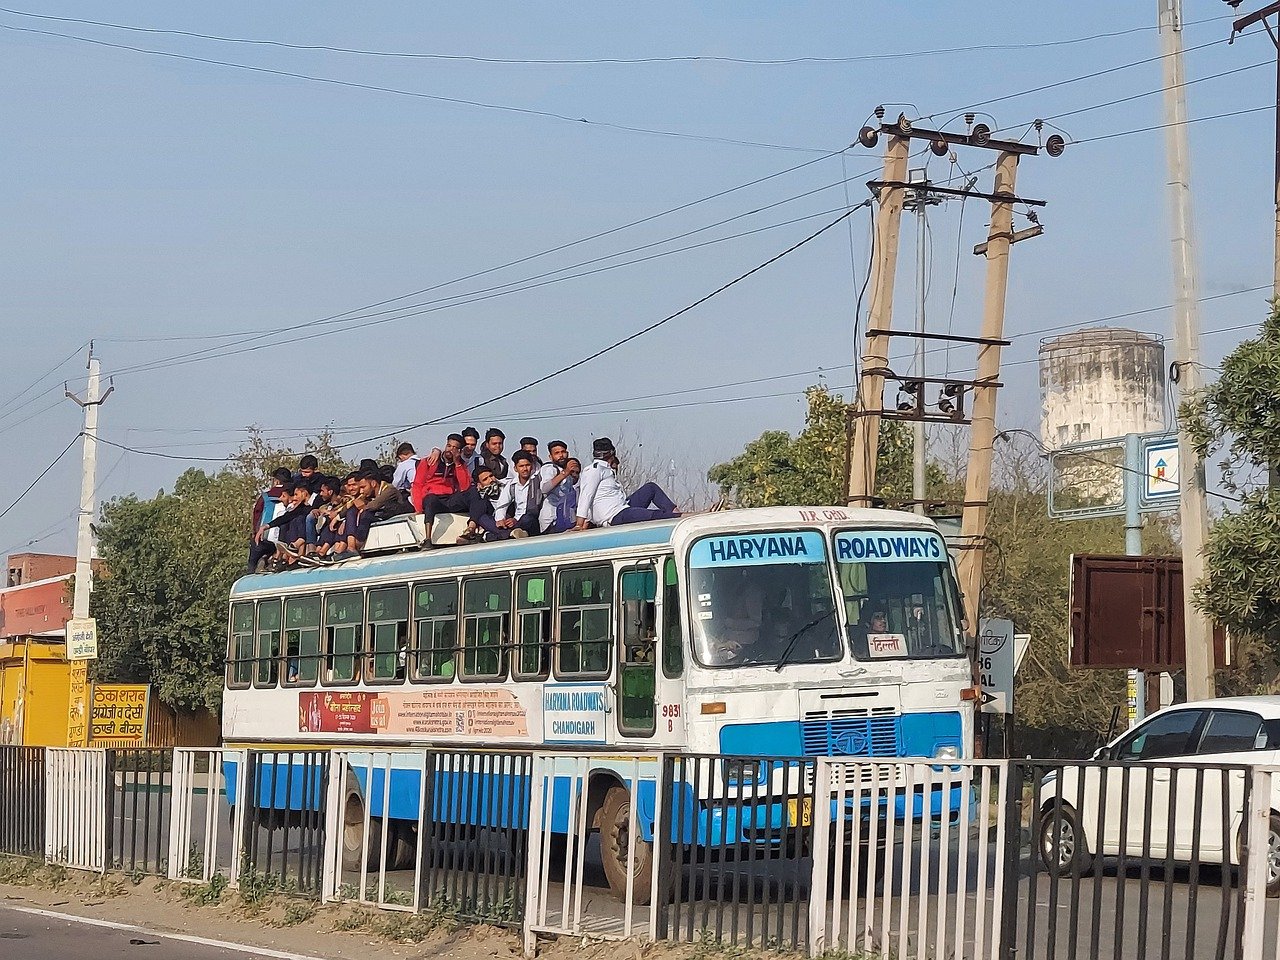 אילוסטרציה - אוטובוס הודי עם אנשים על הגג